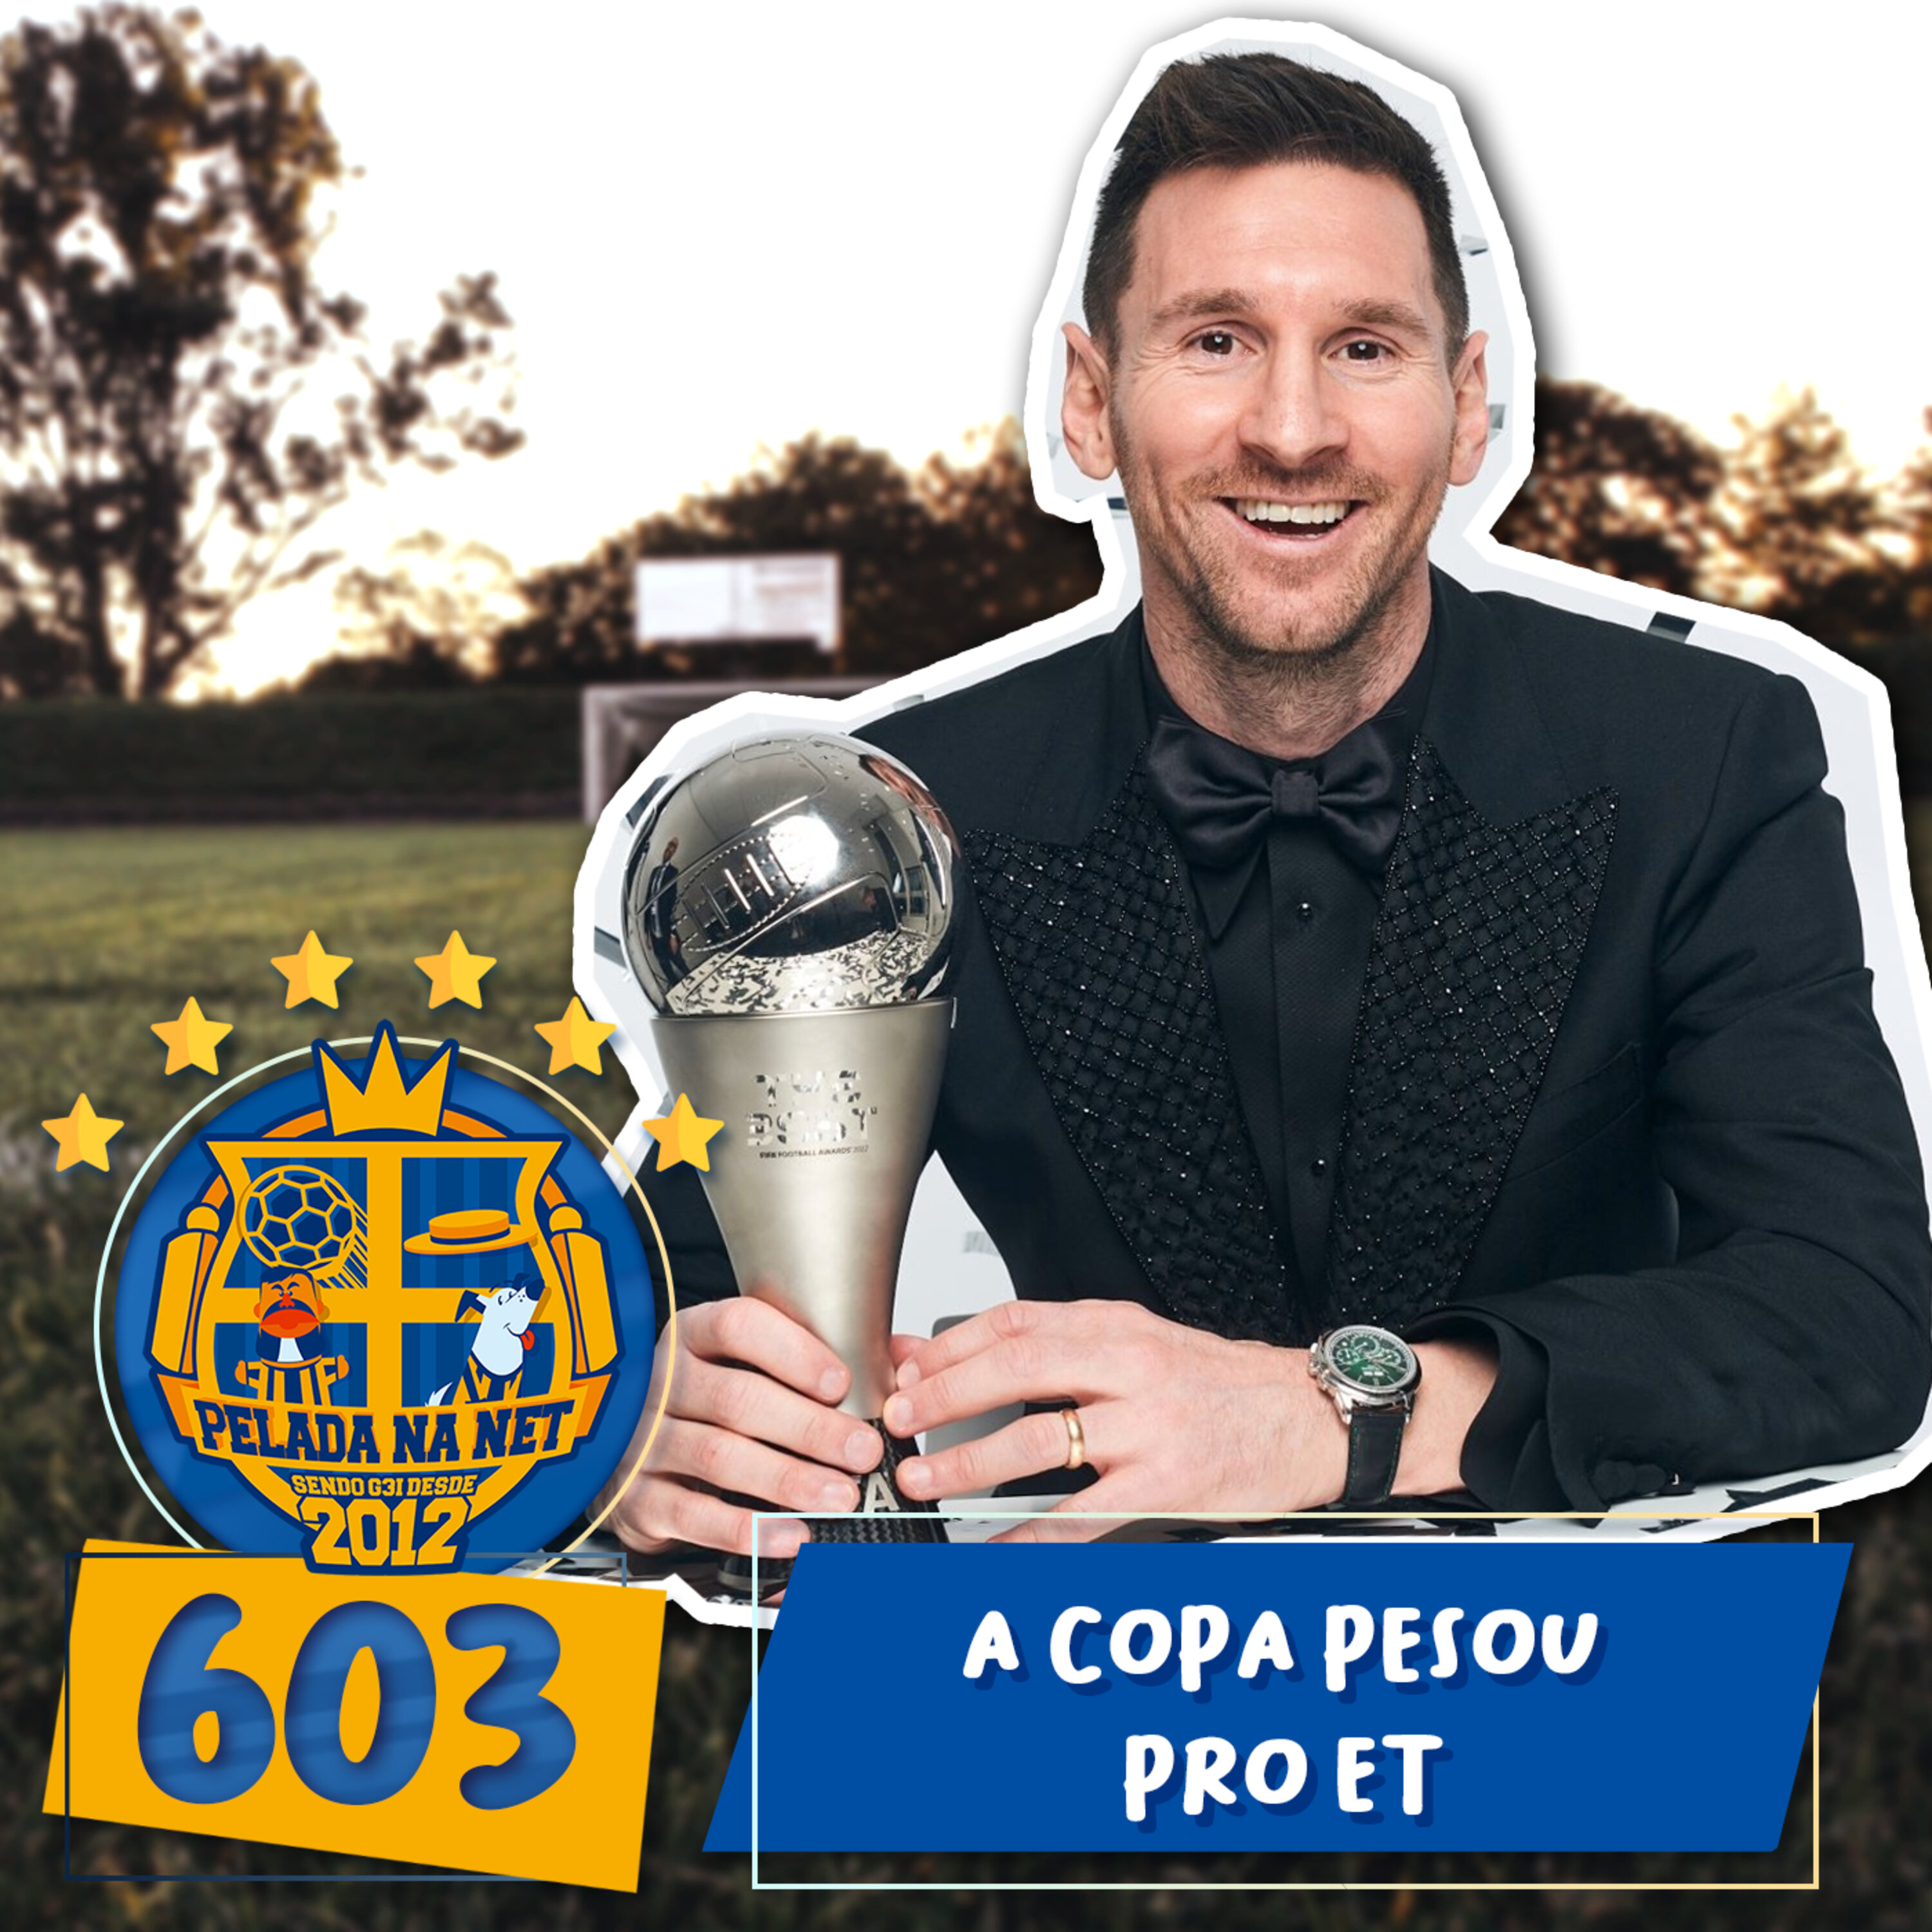 Pelada na Net #603 - A Copa Pesou Pro ET